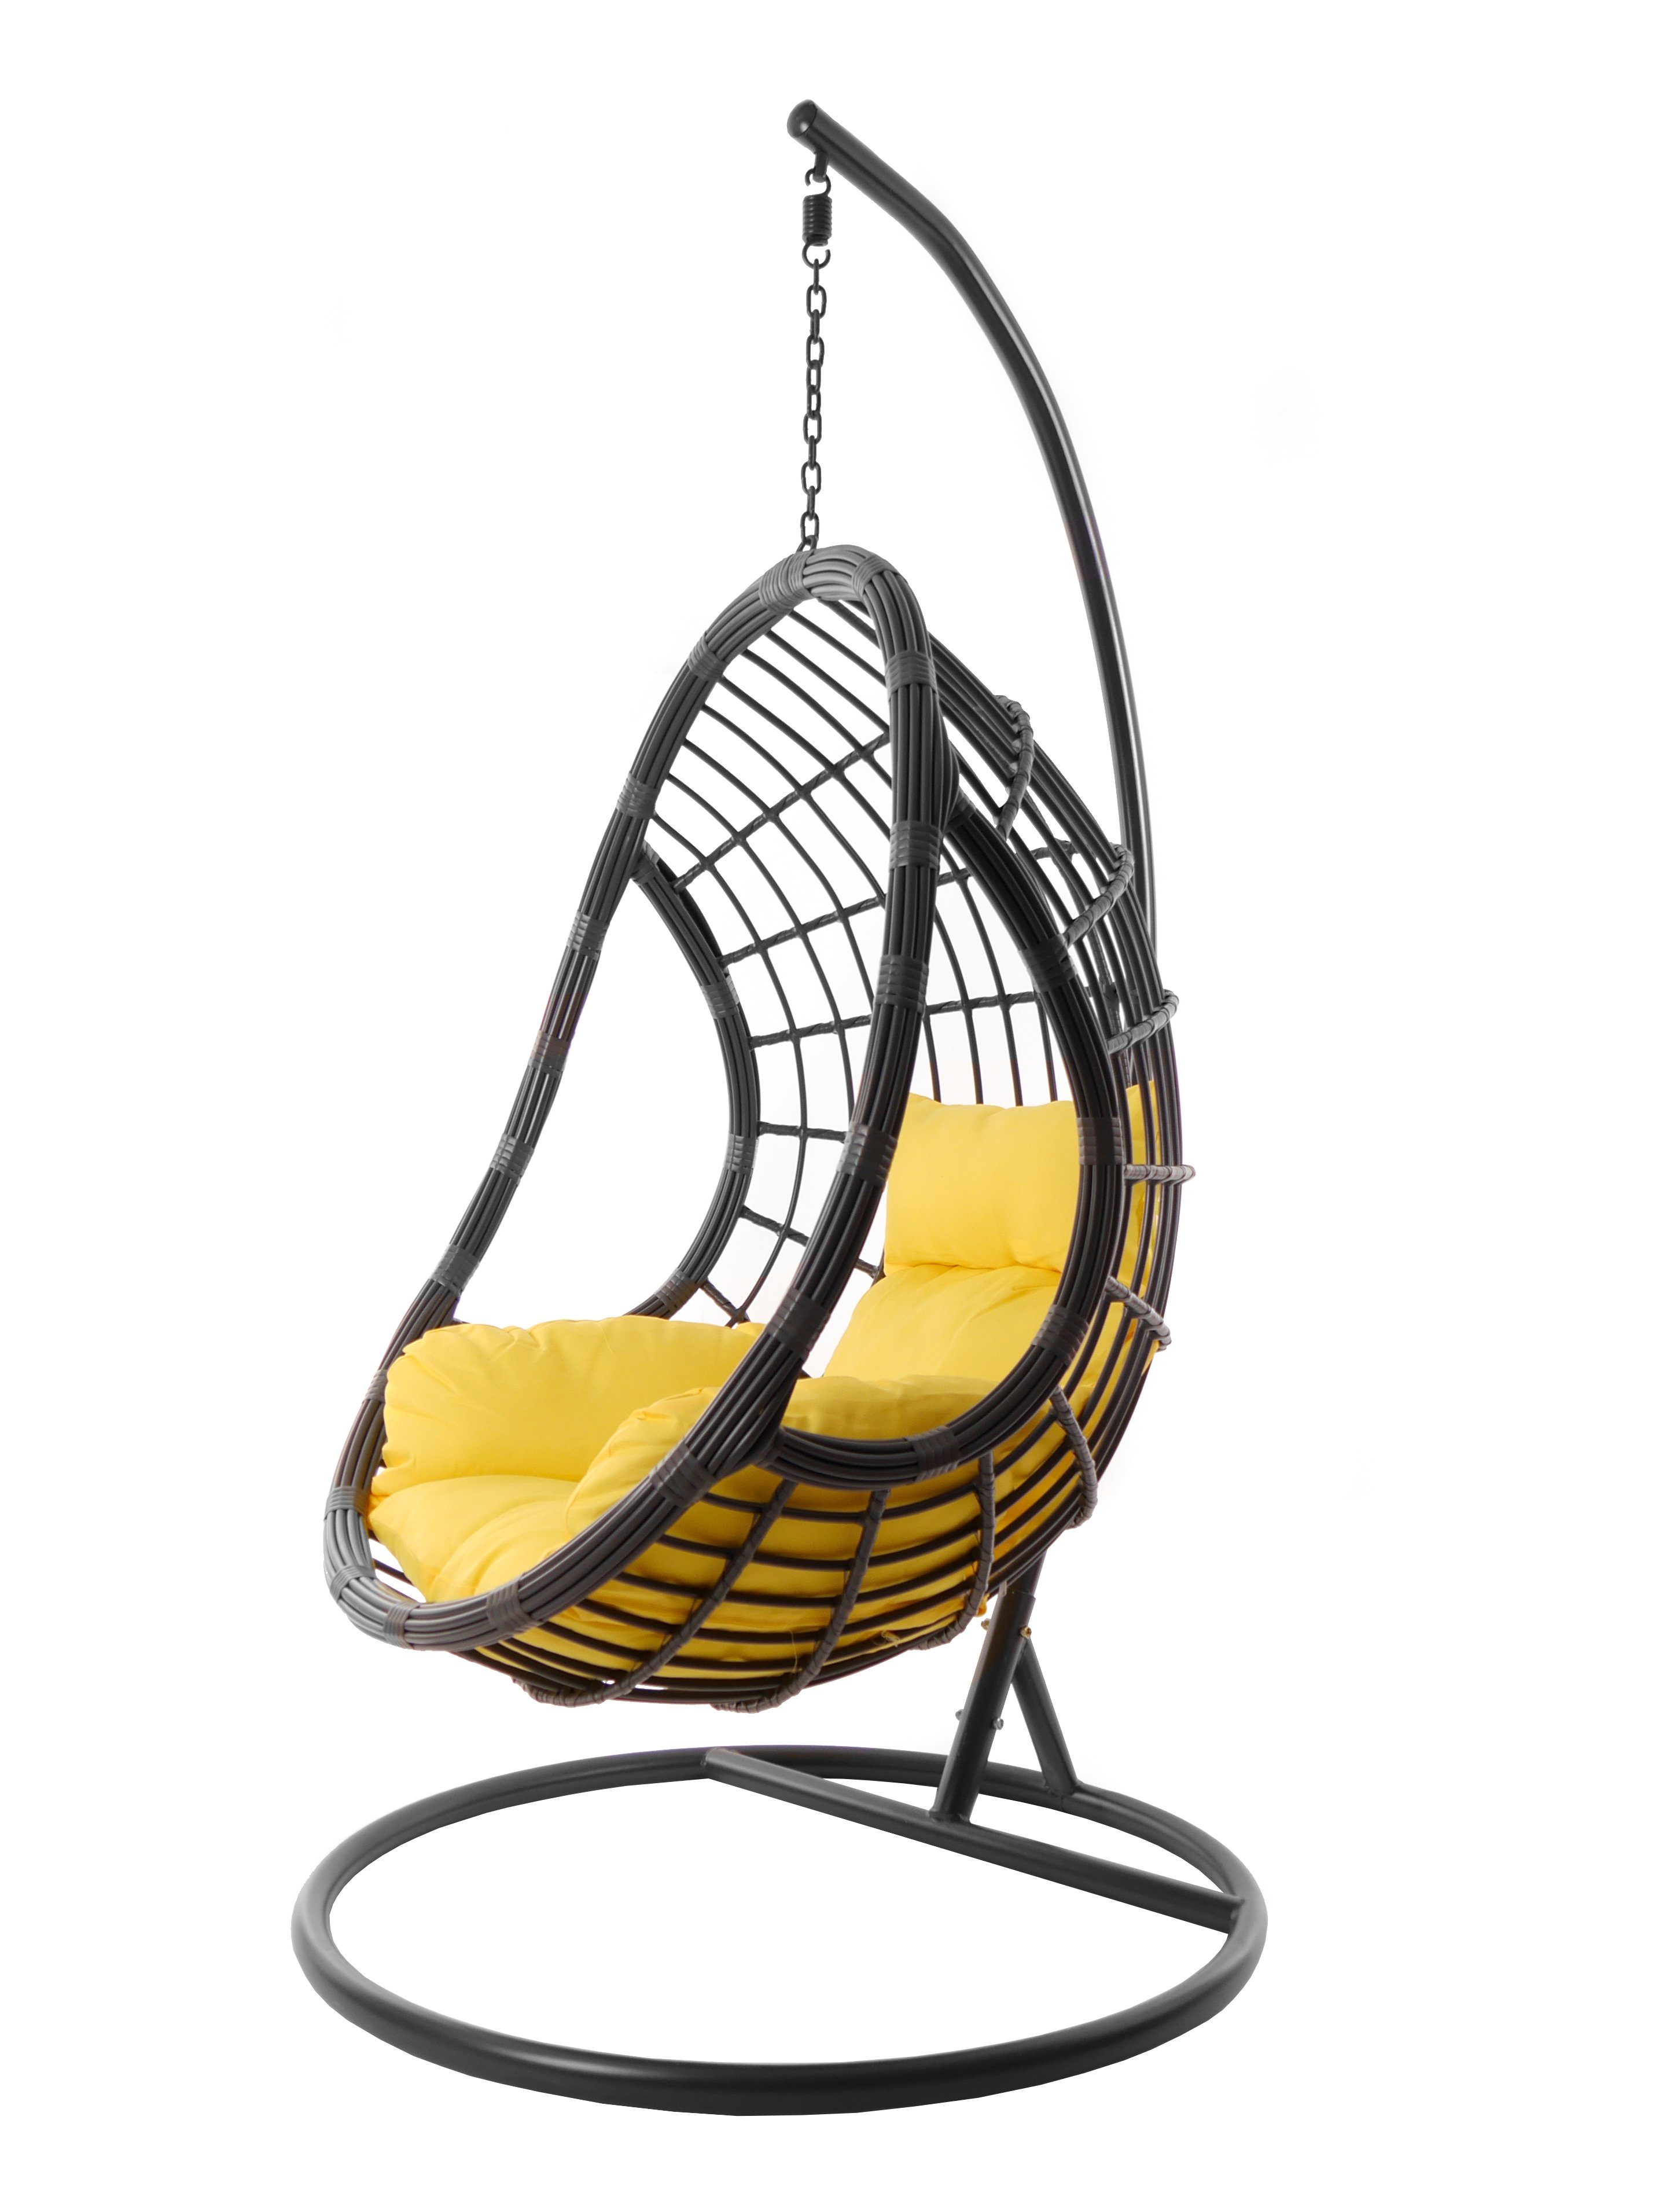 PALMANOVA moderne grau, Hängestuhl Kissen, pineapple) in Loungemöbel mit grau, Hängesessel (2200 KIDEO Hängesessel und Gestell gelb farbige Nest-Kissen